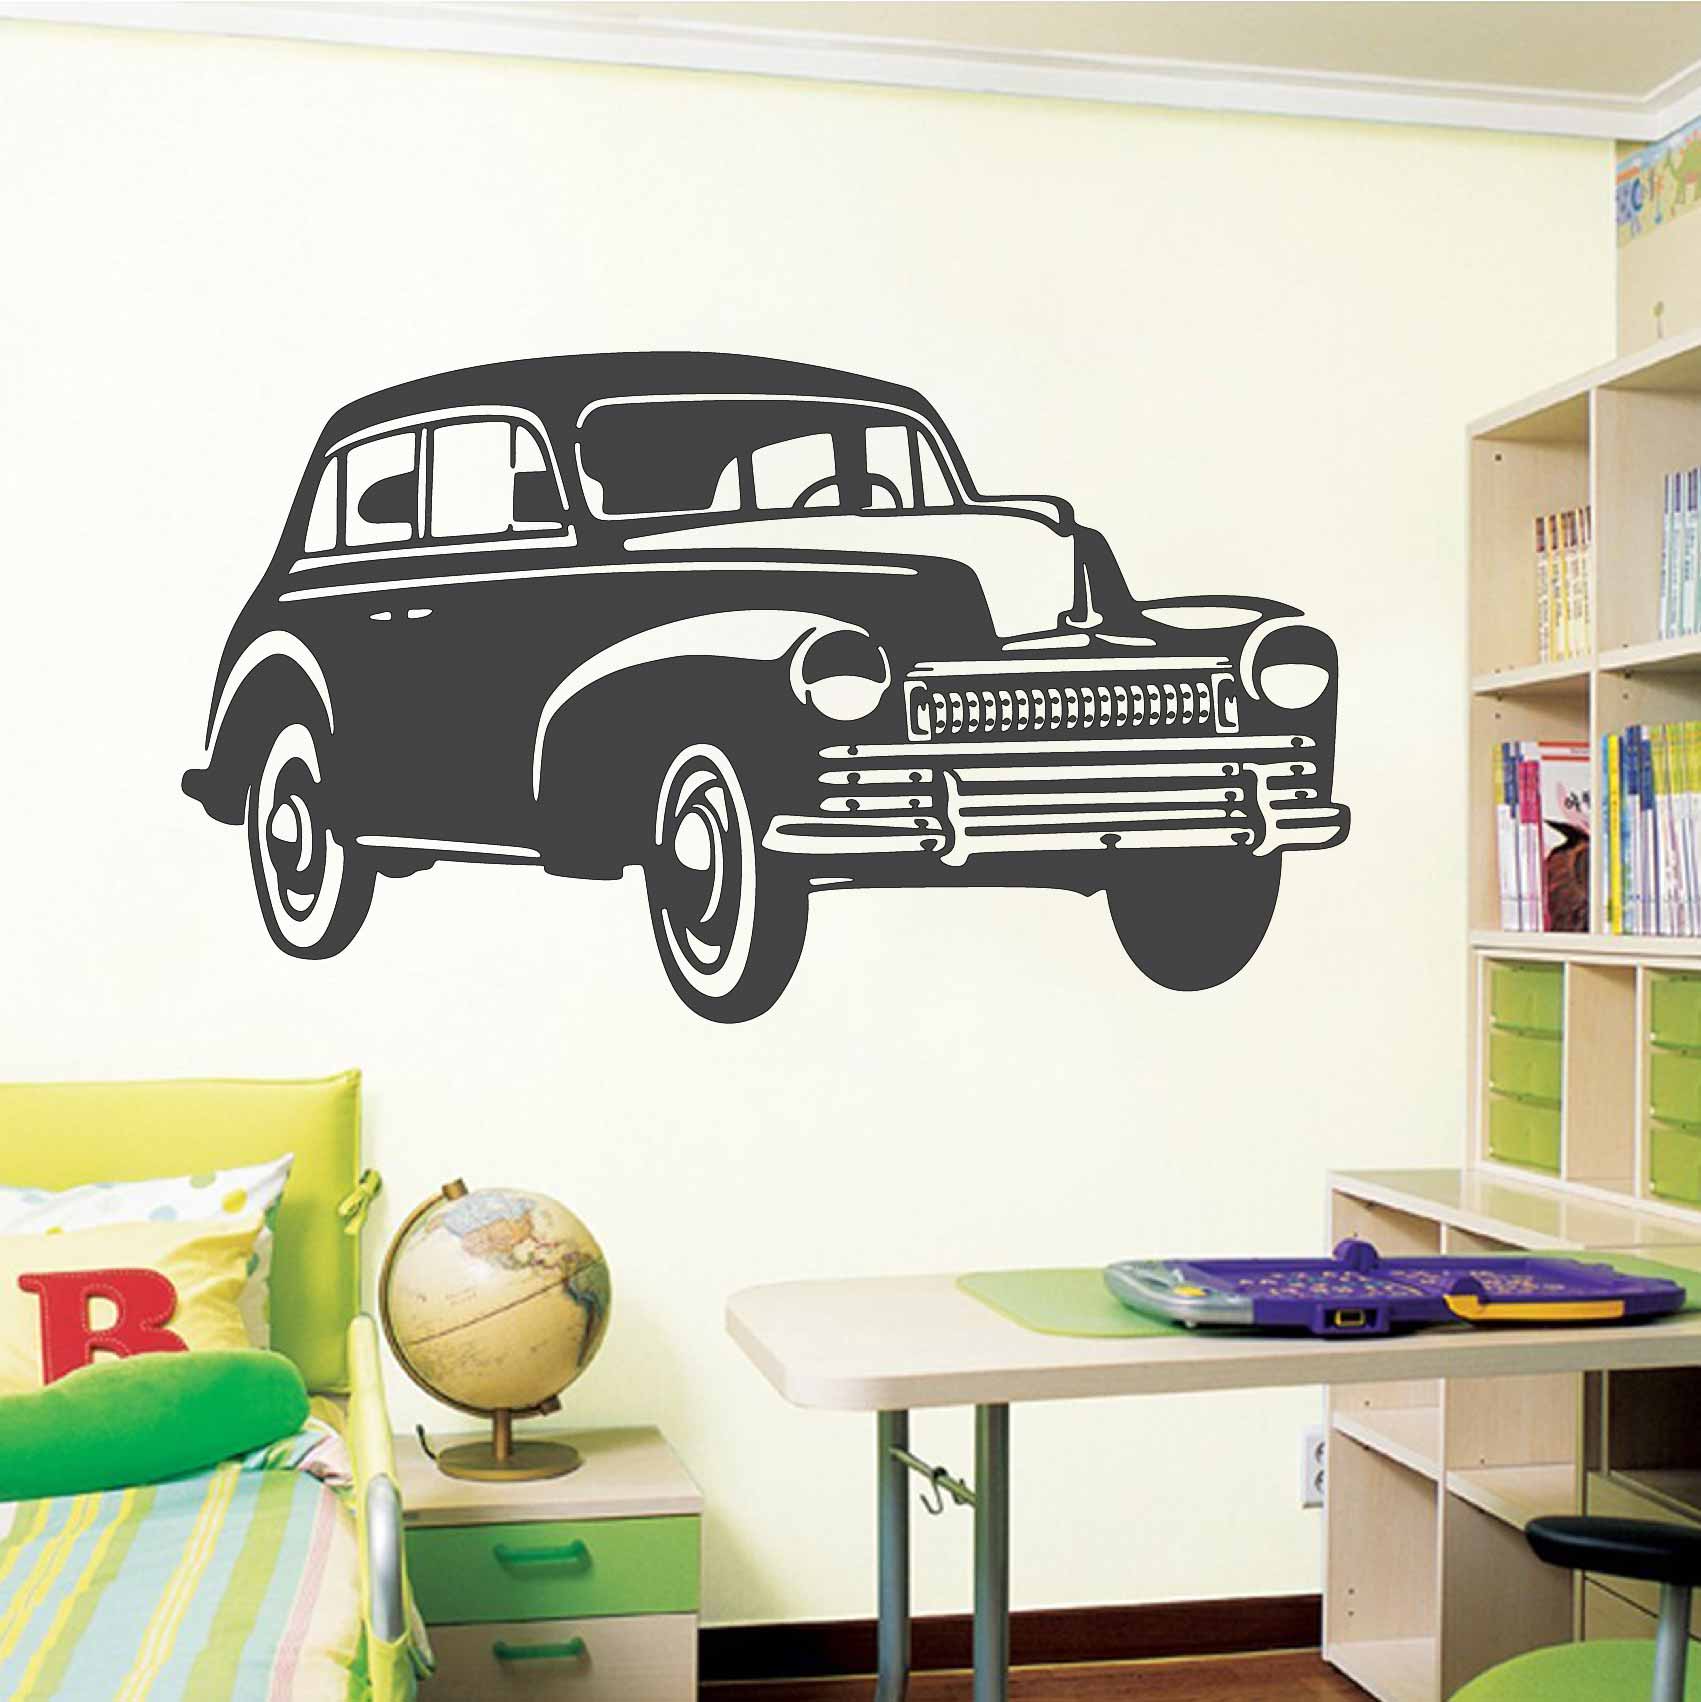 stickers-deco-voiture-vintage-1940-retro-pop-art-ref2voiture-autocollant-mural-stickers-muraux-sticker-deco-salon-cuisine-chambre-min